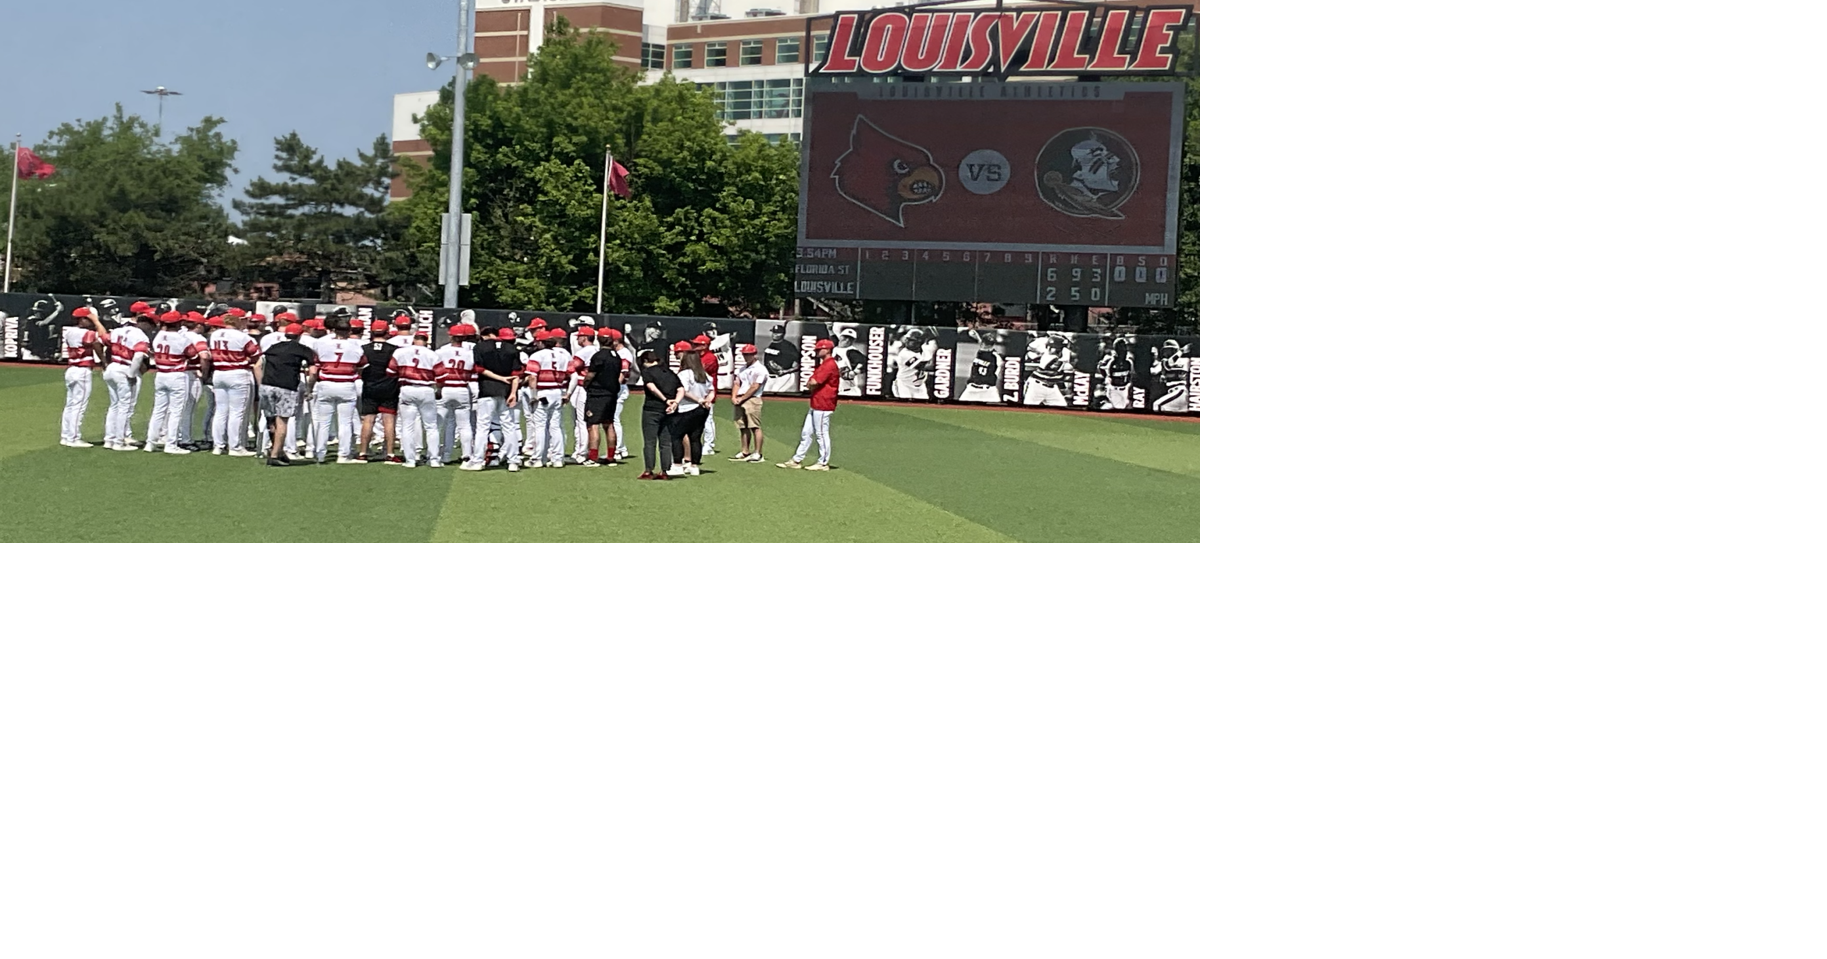 University Louisville Baseball